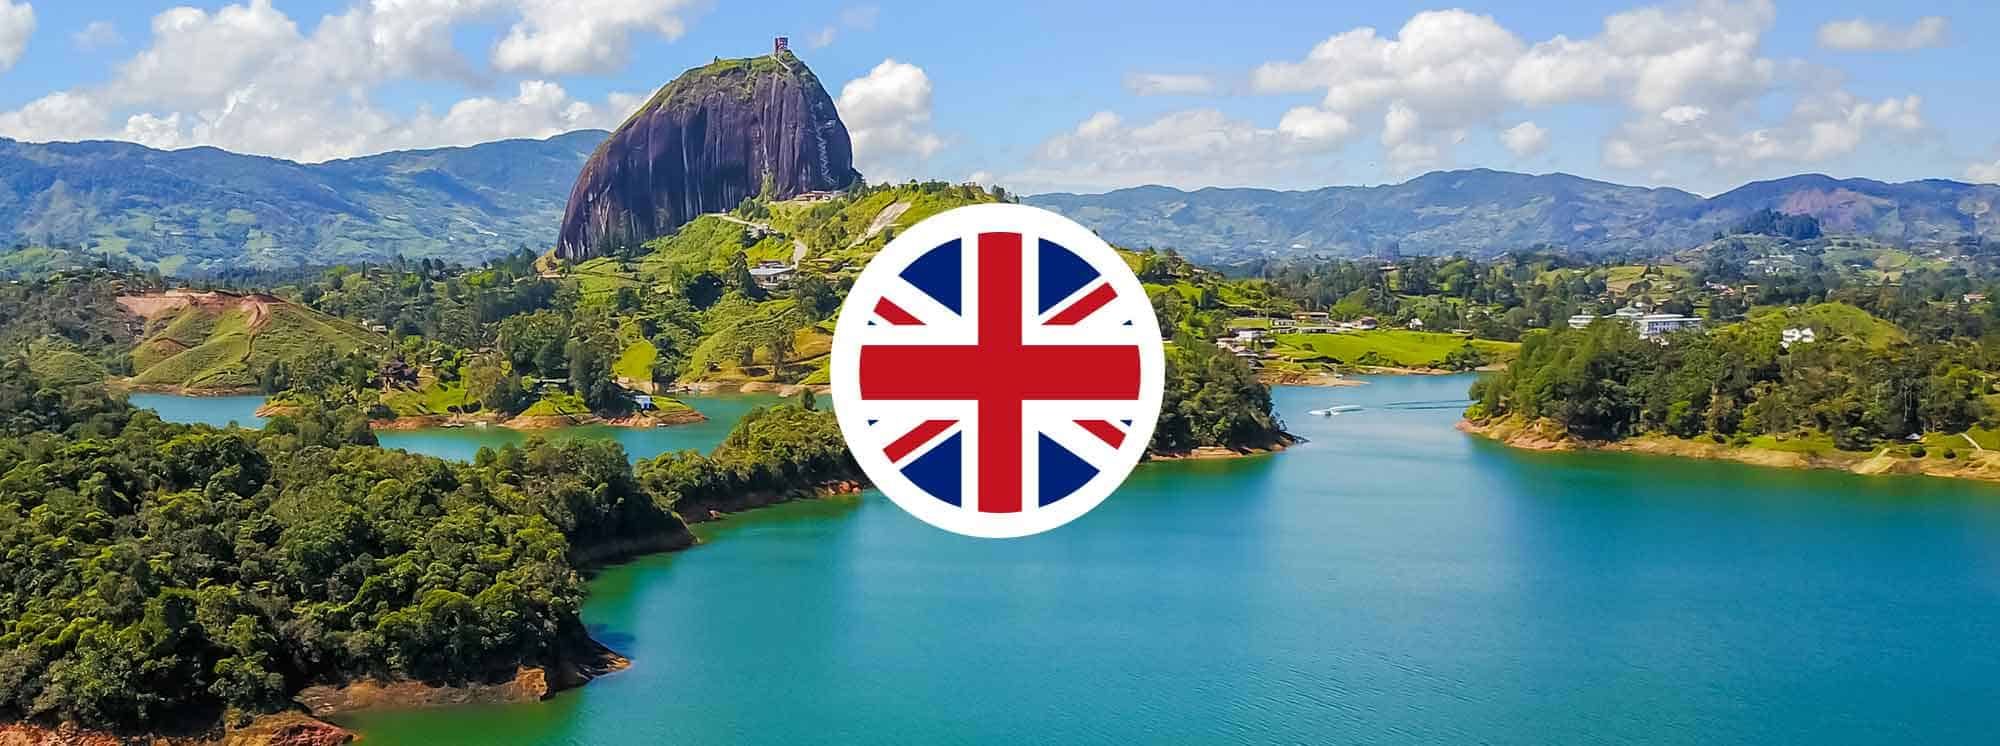 يحظى المنهج البريطاني، المعروف أيضًا باسم المنهج البريطاني، بشعبية كبيرة في كولومبيا. اكتشف أفضل 3 مدارس بريطانية في كولومبيا.